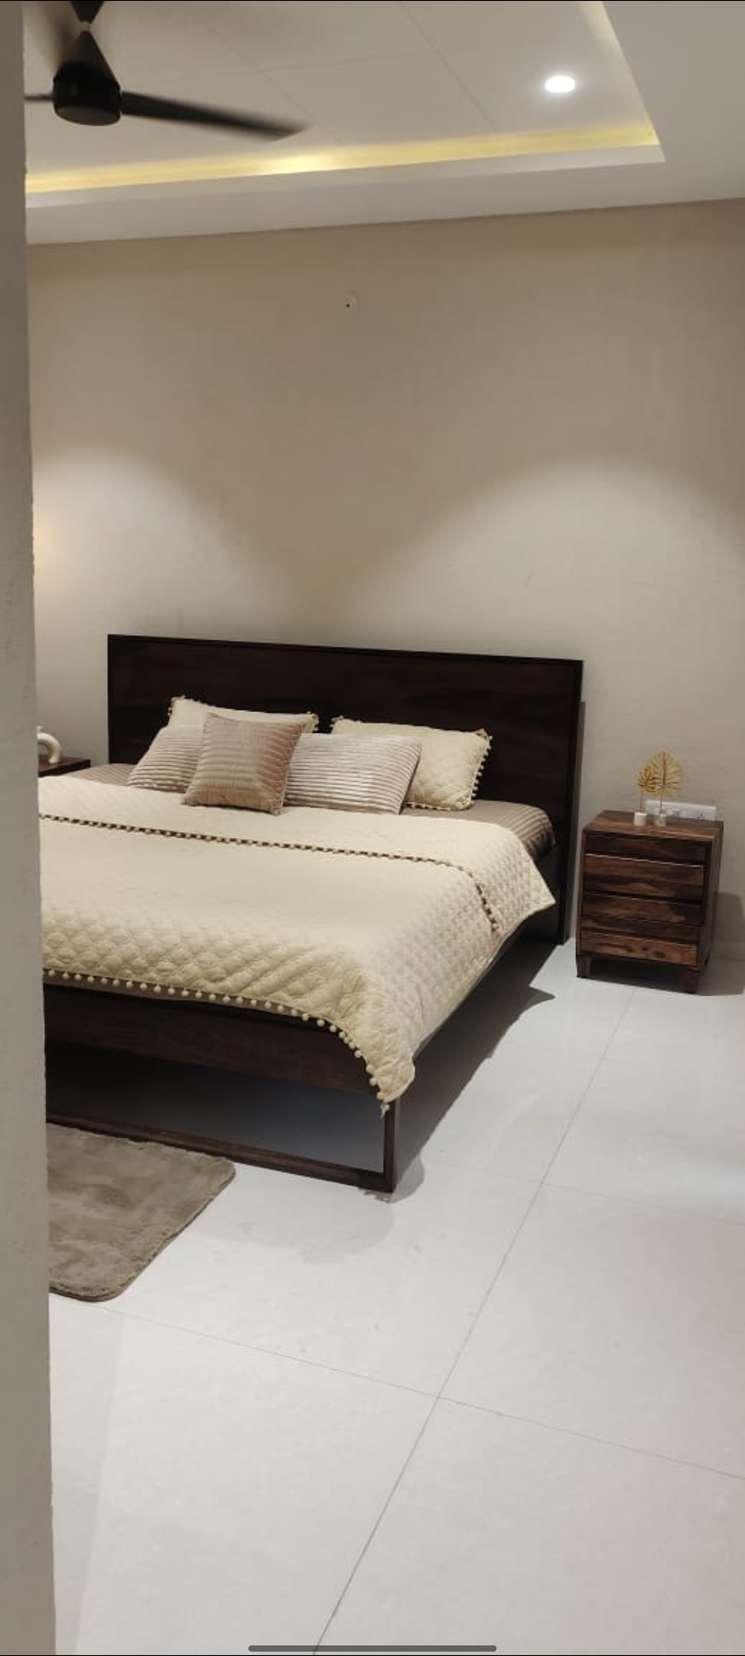 3 Bedroom 1553 Sq.Ft. Apartment in Shankar Nagar Raipur